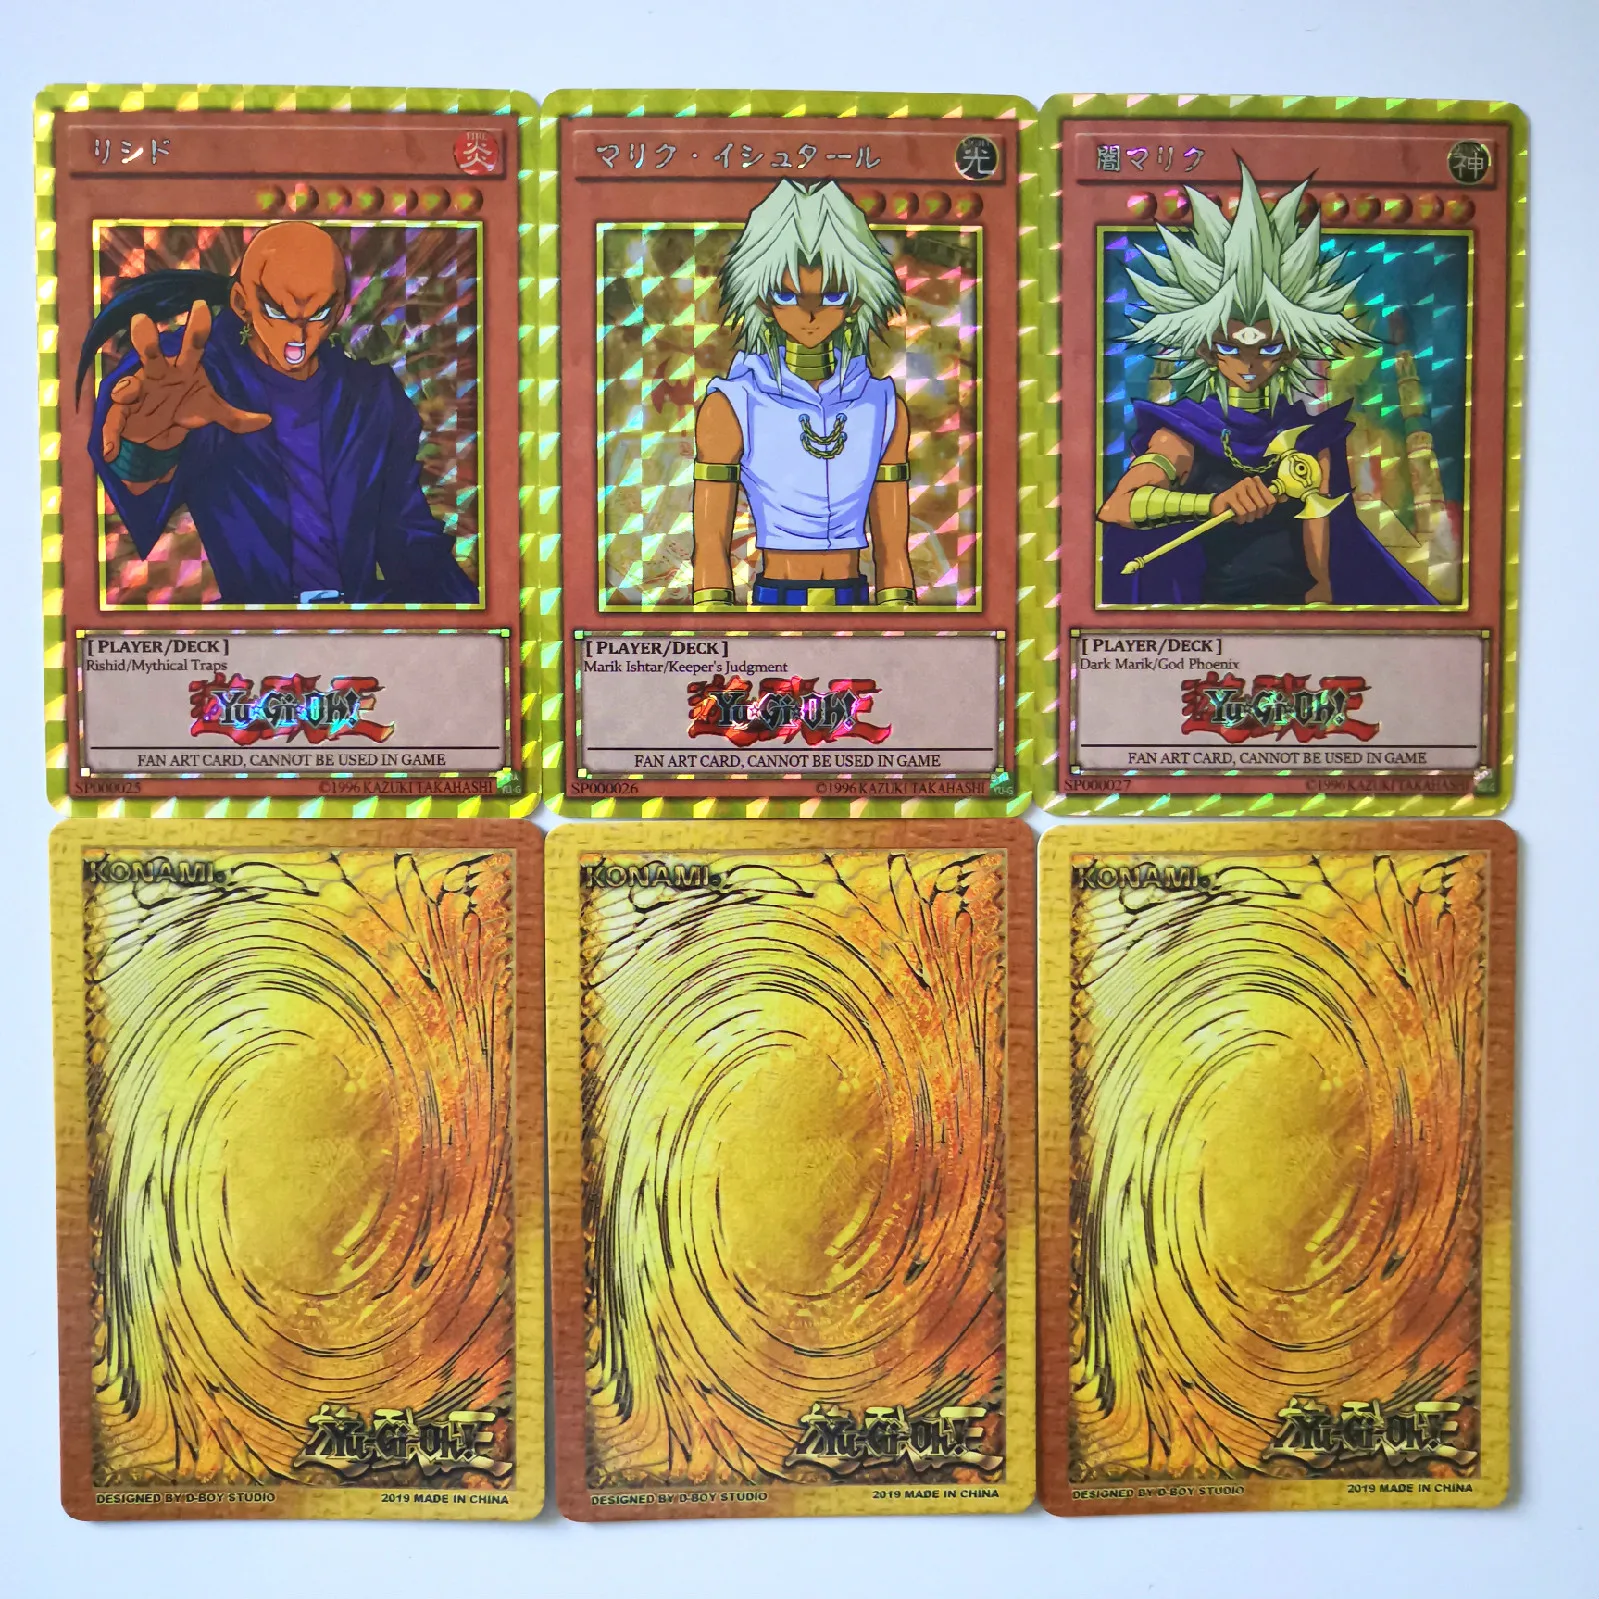 27 шт. Yu Gi Oh персонаж первого поколения флэш-карточки с буквами Хобби Коллекционные коллекционные игры Коллекция аниме-открытки